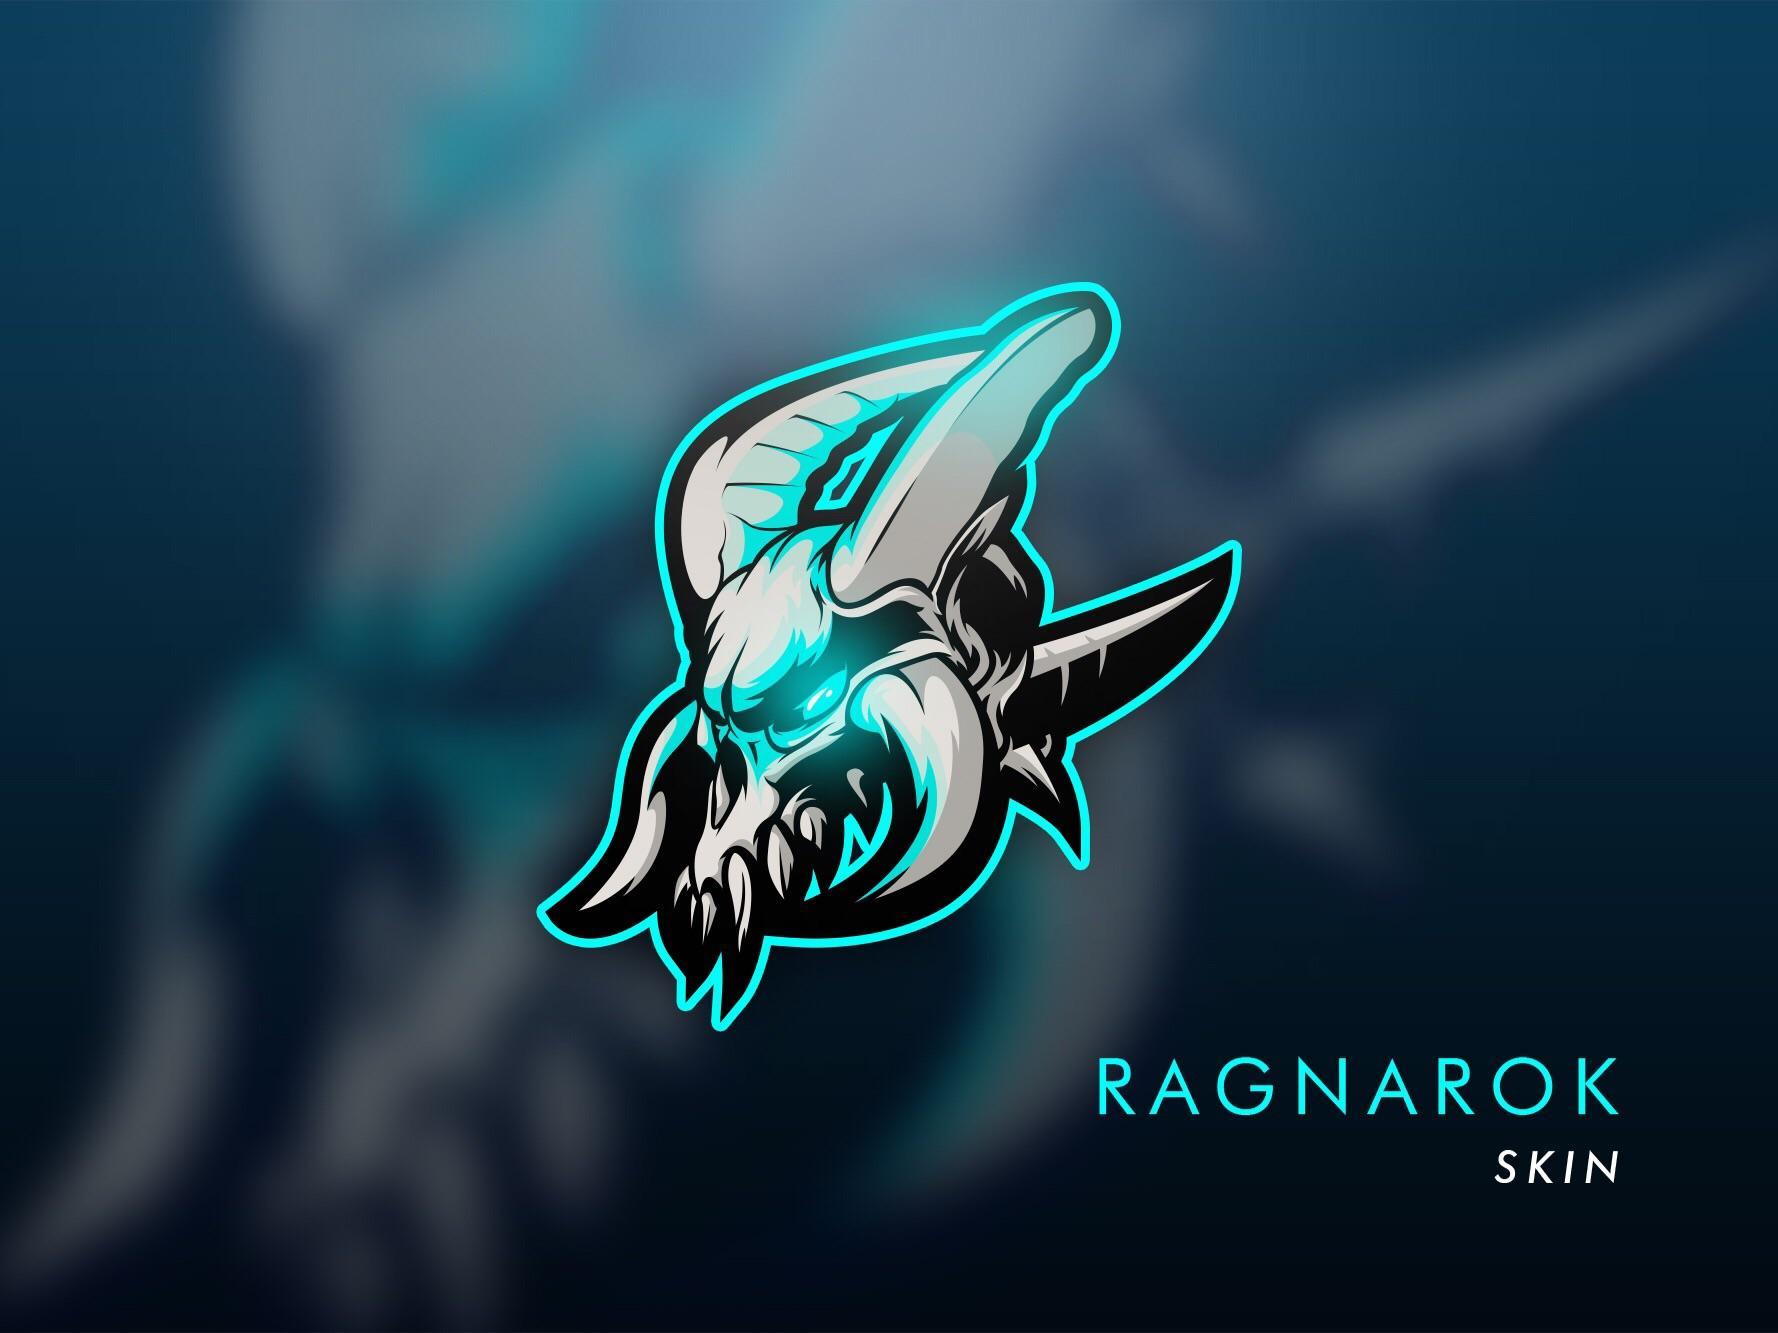 Mascot Logo - Ragnarok mascot logo I made. What do you think? : FortNiteBR